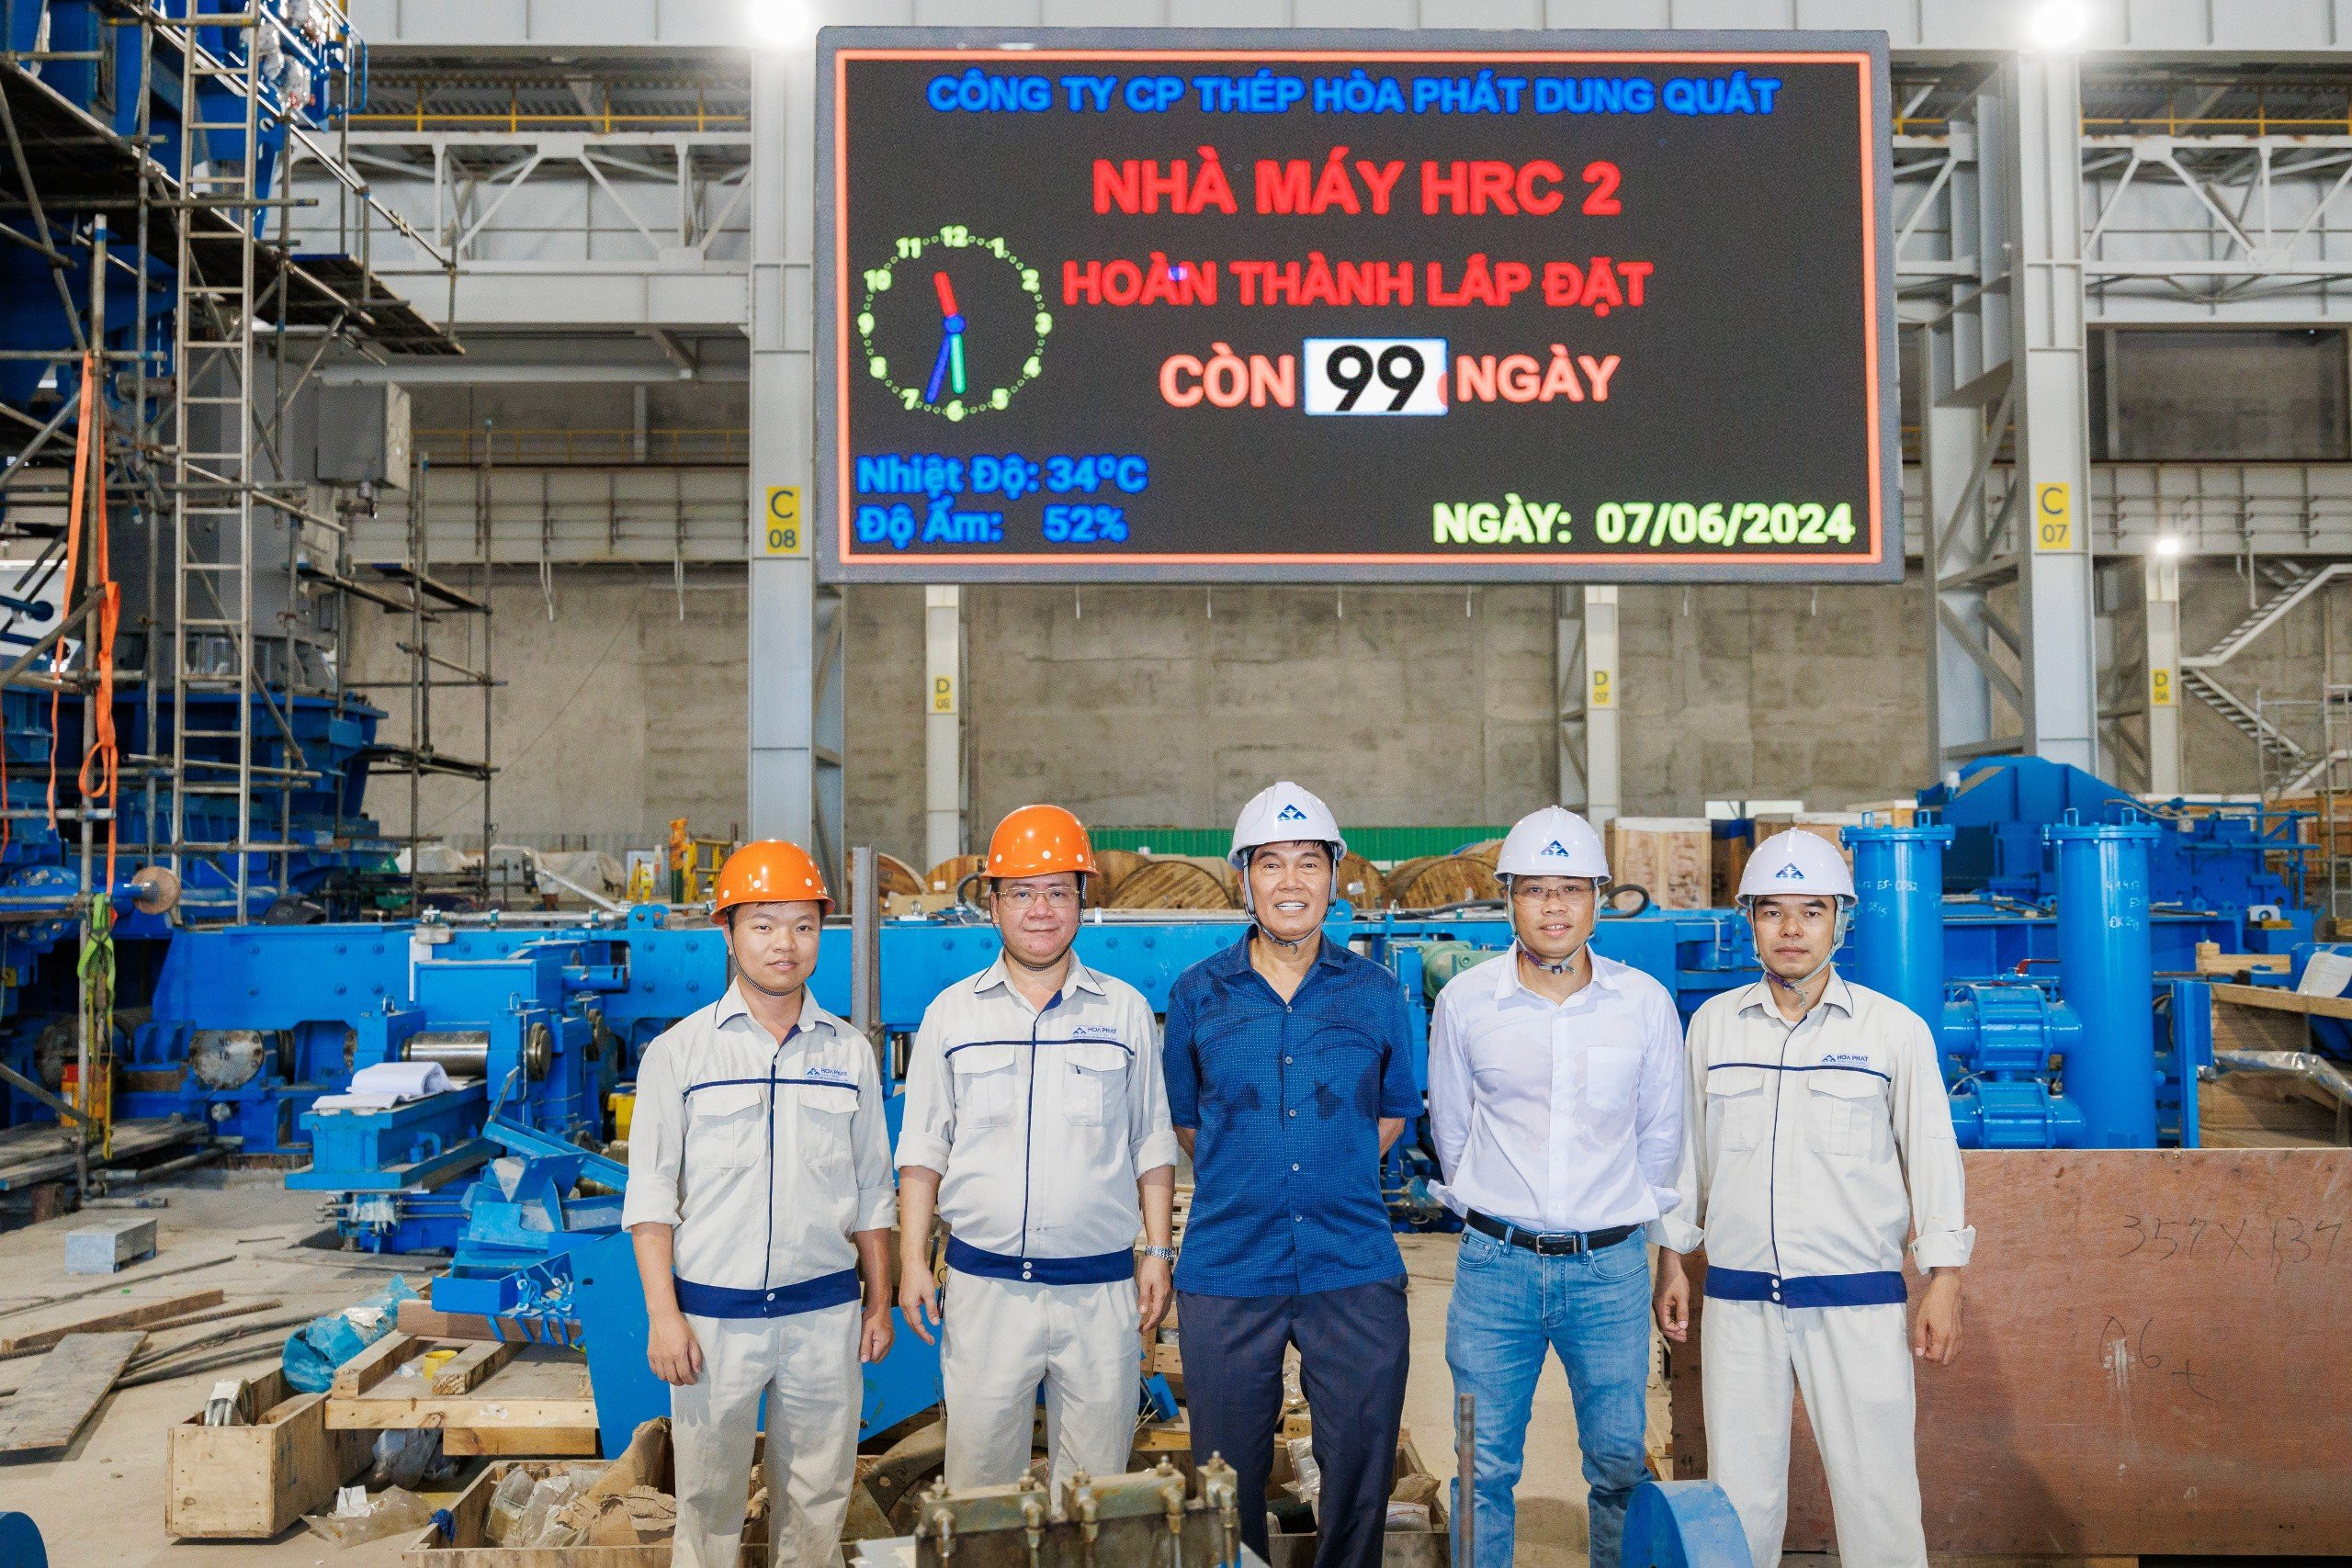  Chủ tịch Trần Đình Long chụp ảnh cùng BGĐ Công ty, BGĐ Nhà máy QSP và Trưởng Ban Dự án Hòa Phát Dung Quất 2 tại bảng đếm ngược Nhà máy HRC 2 hoàn thành lắp đặt còn 99 ngày